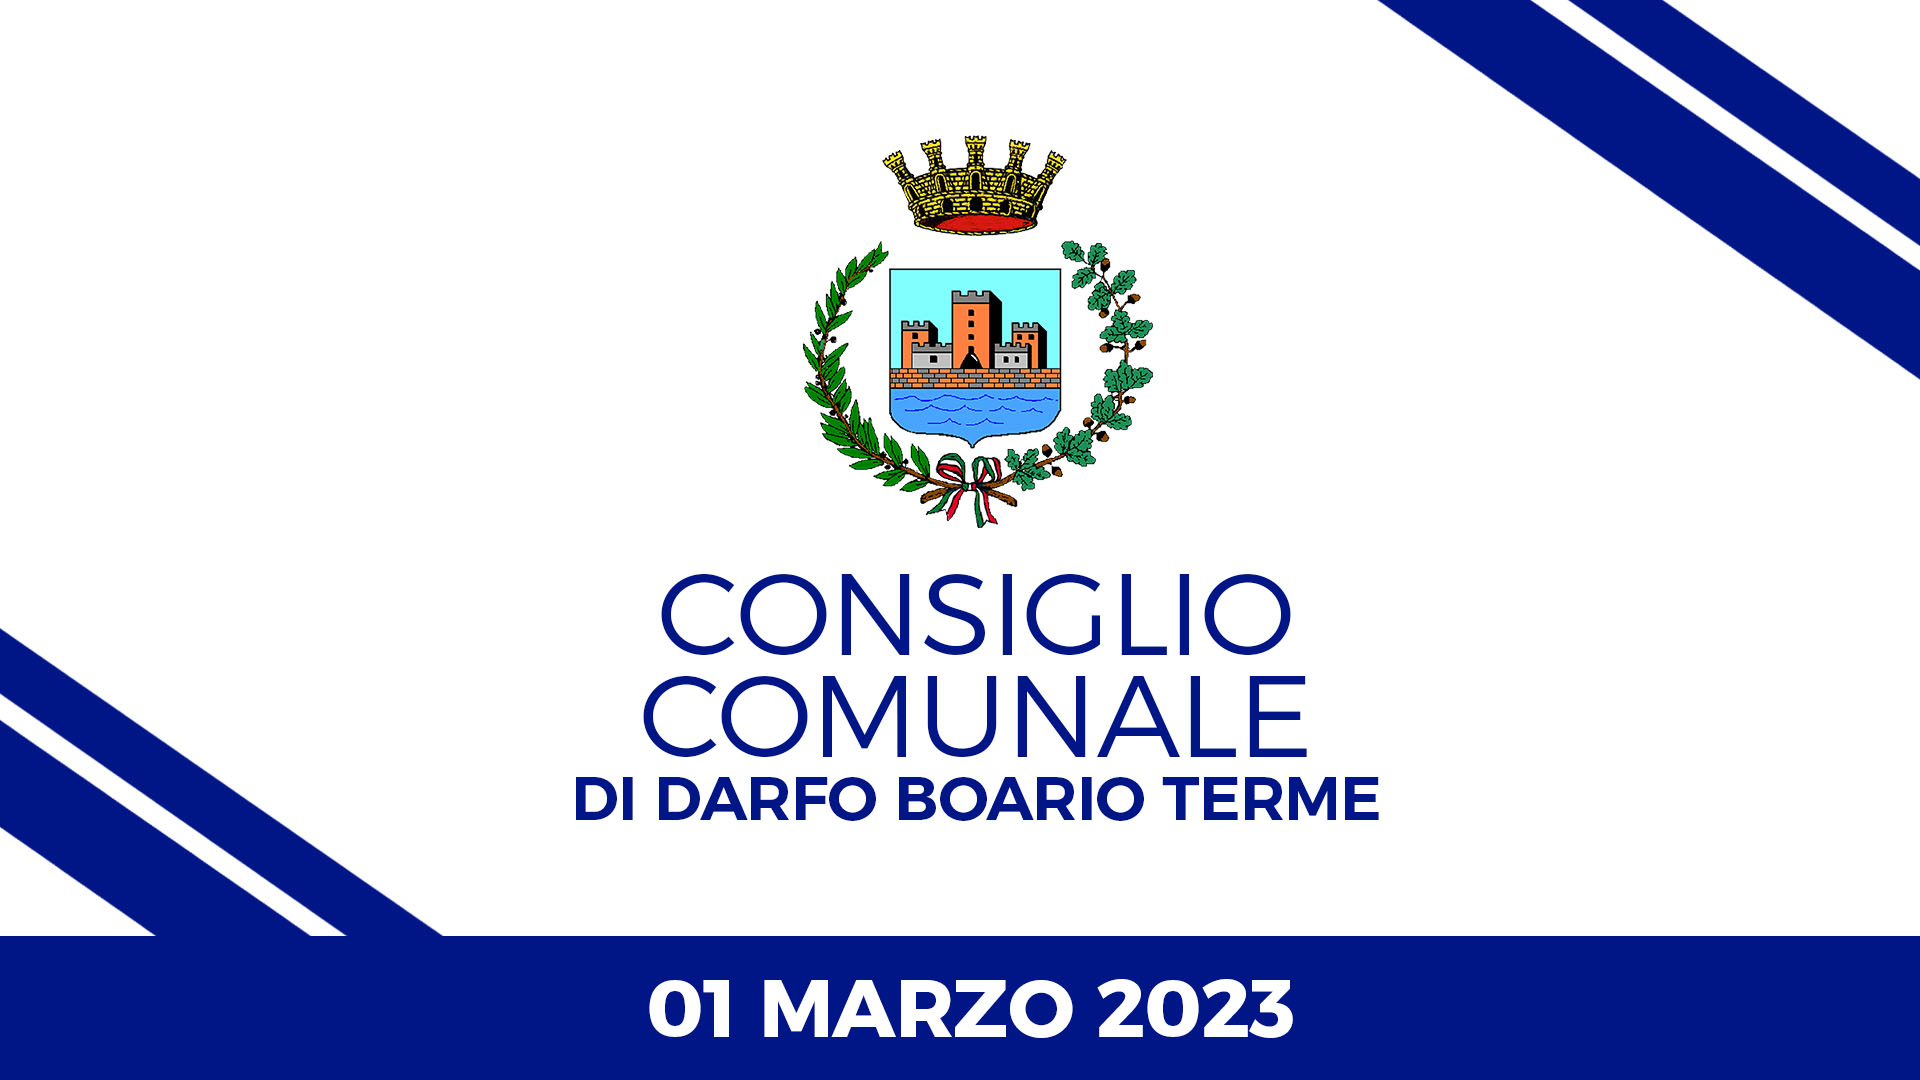 Consiglio Comunale di Darfo Boario Terme del 01 Marzo 2023